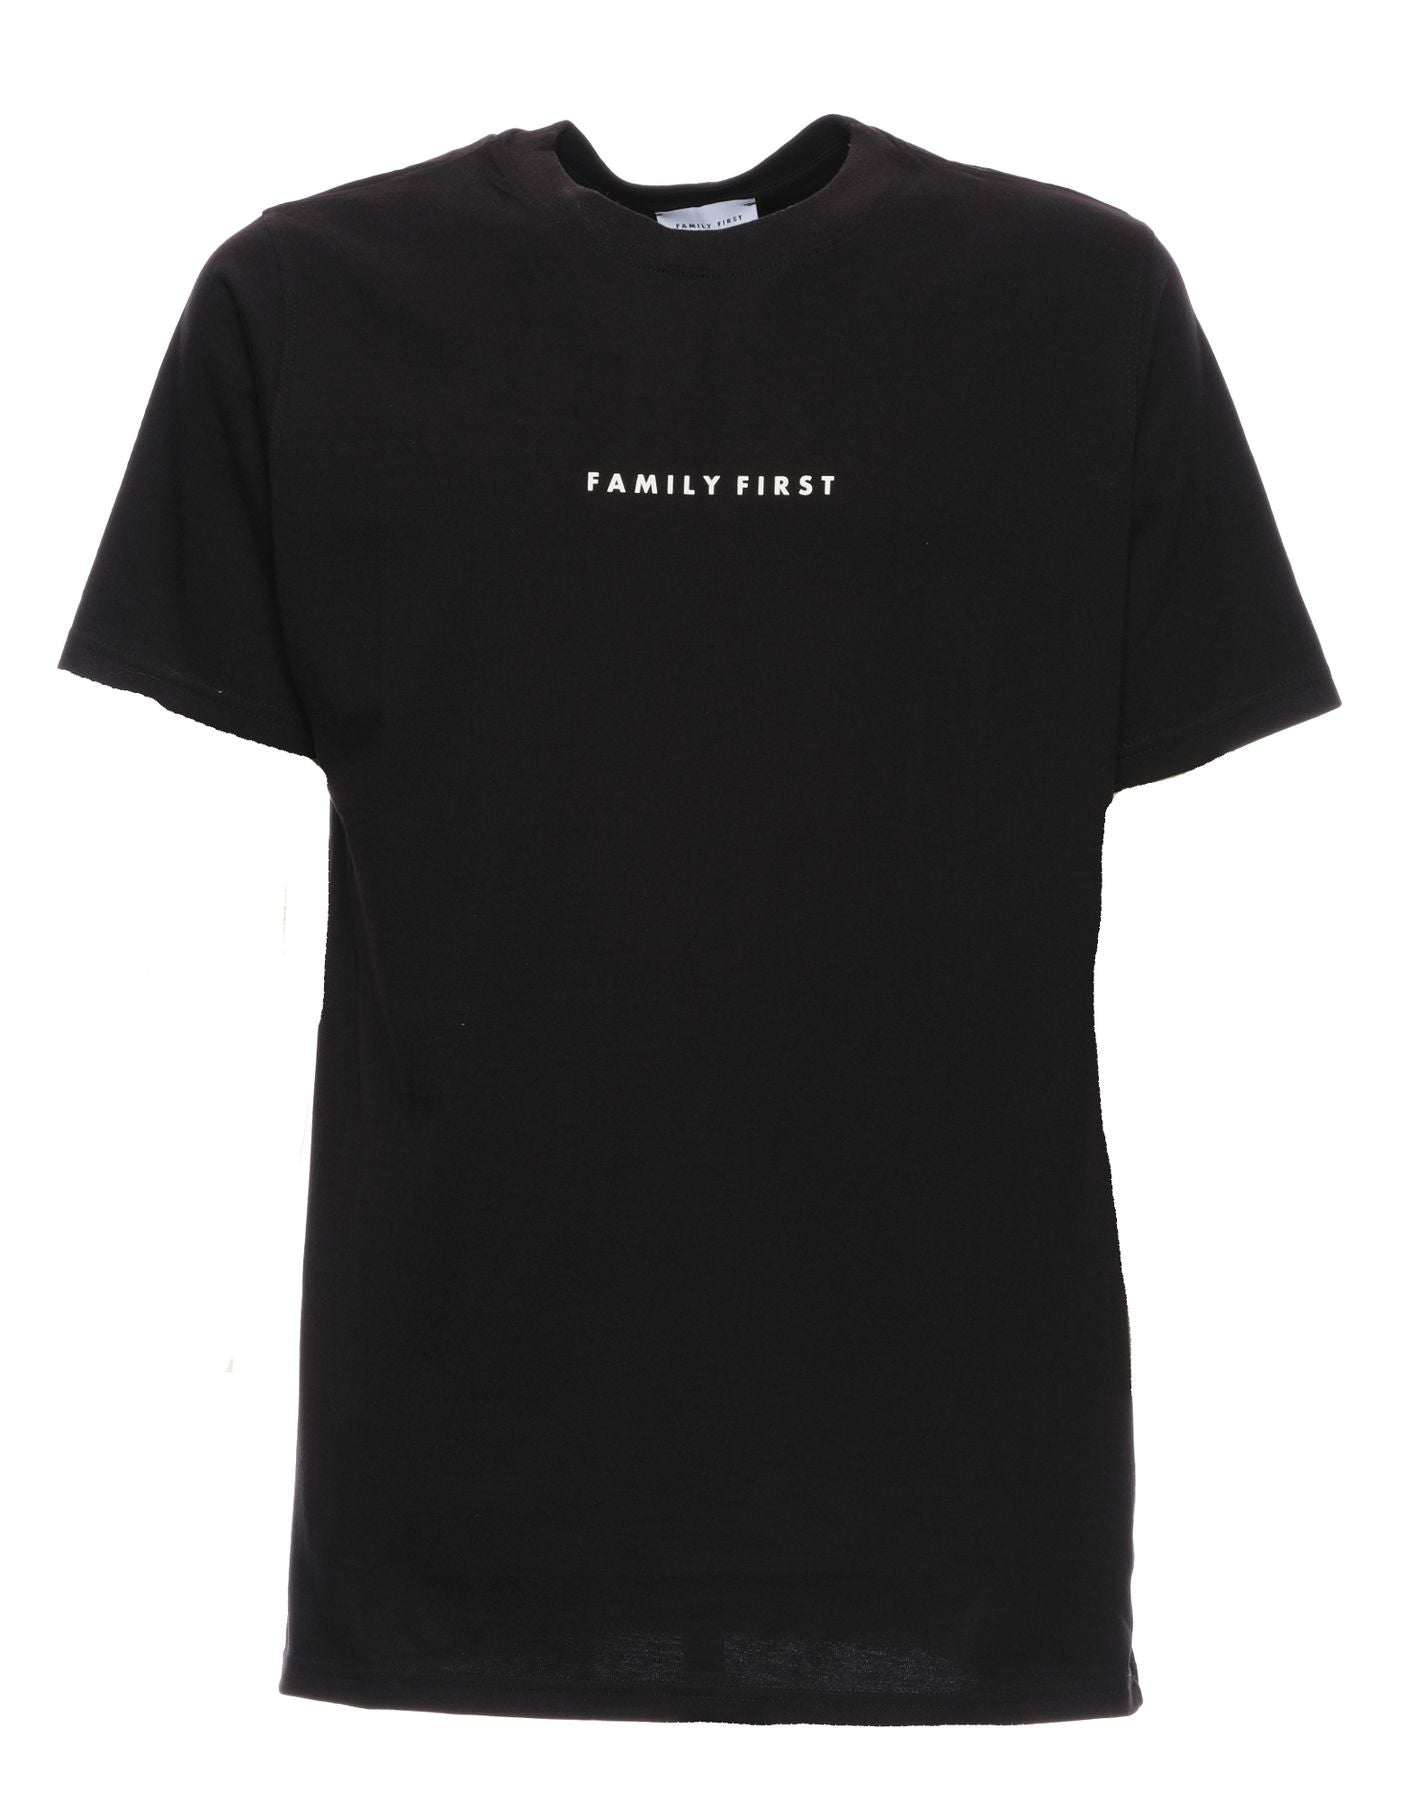 T-shirt pour l'homme Box Logo noir Family First